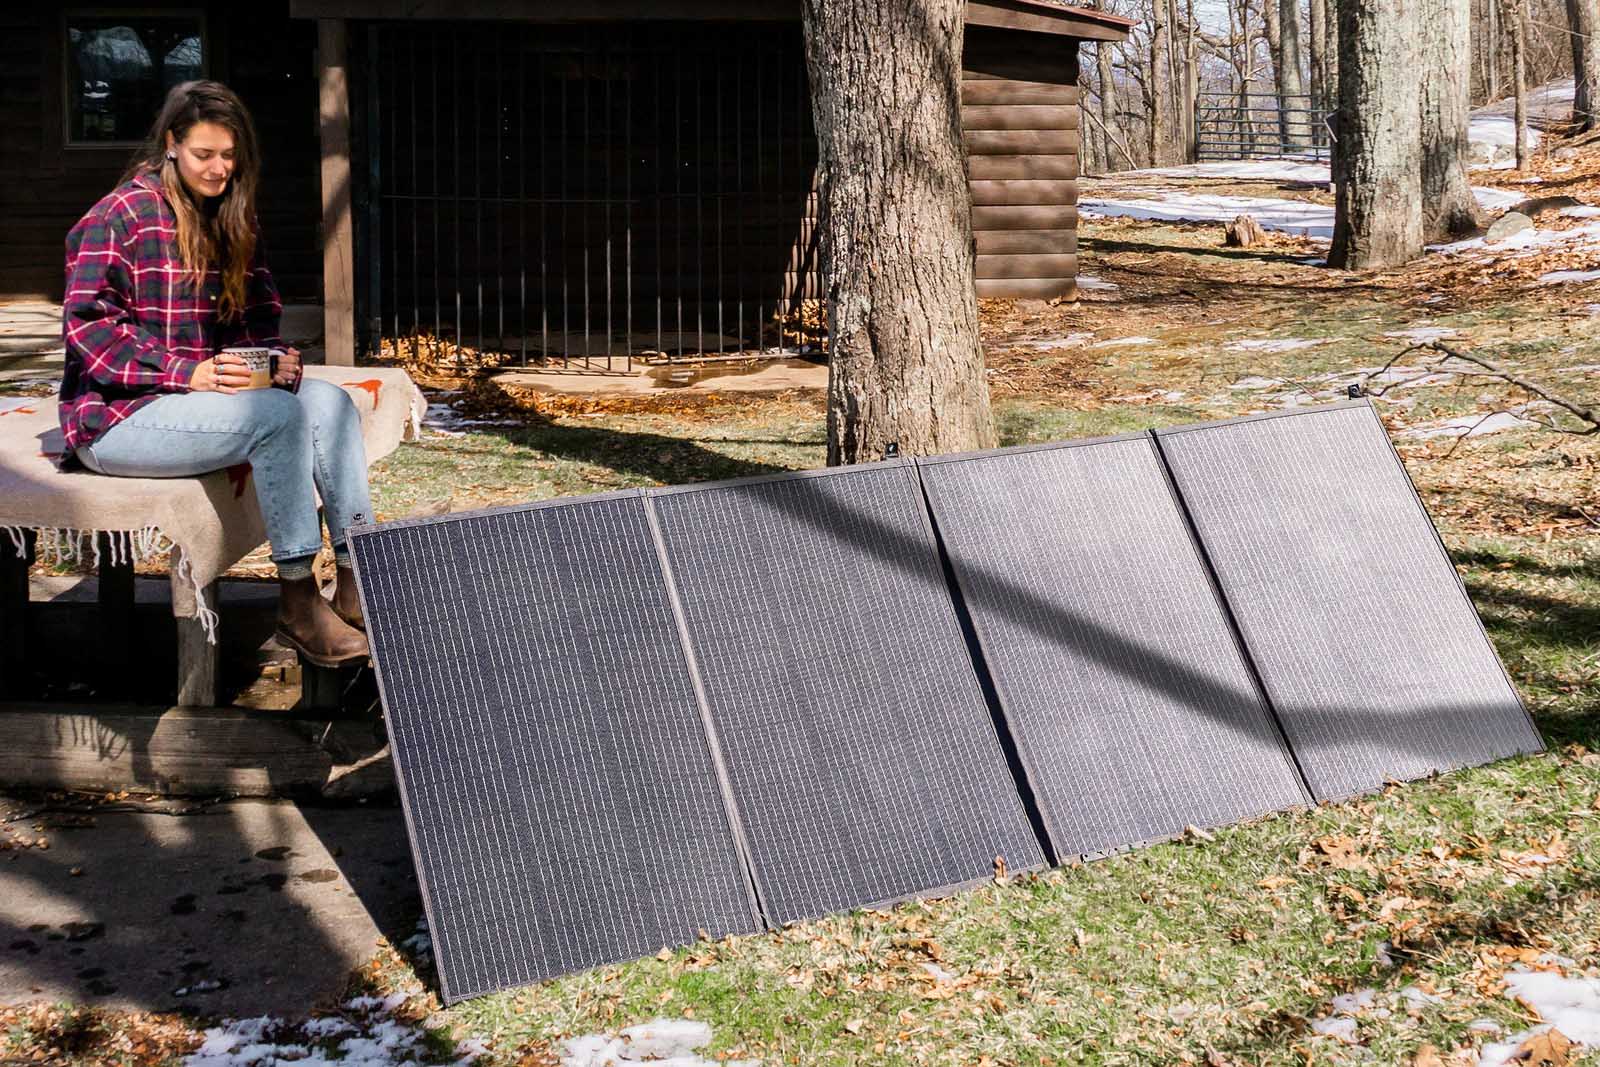 Frau mit tragbaren Sonnenkollektoren in verschneiter Waldlandschaft.